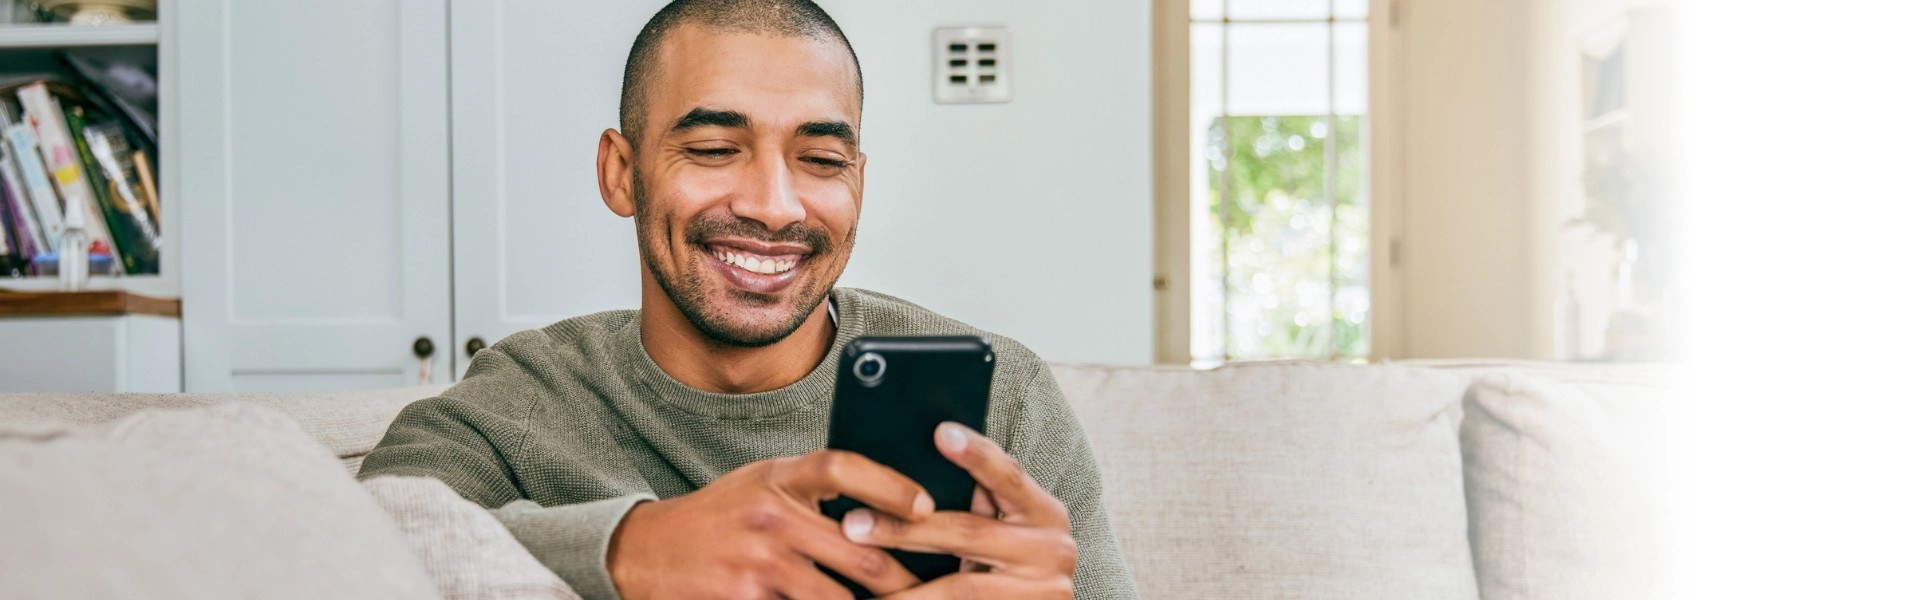 Homem negro sorrindo enquanto utiliza um smartphone.